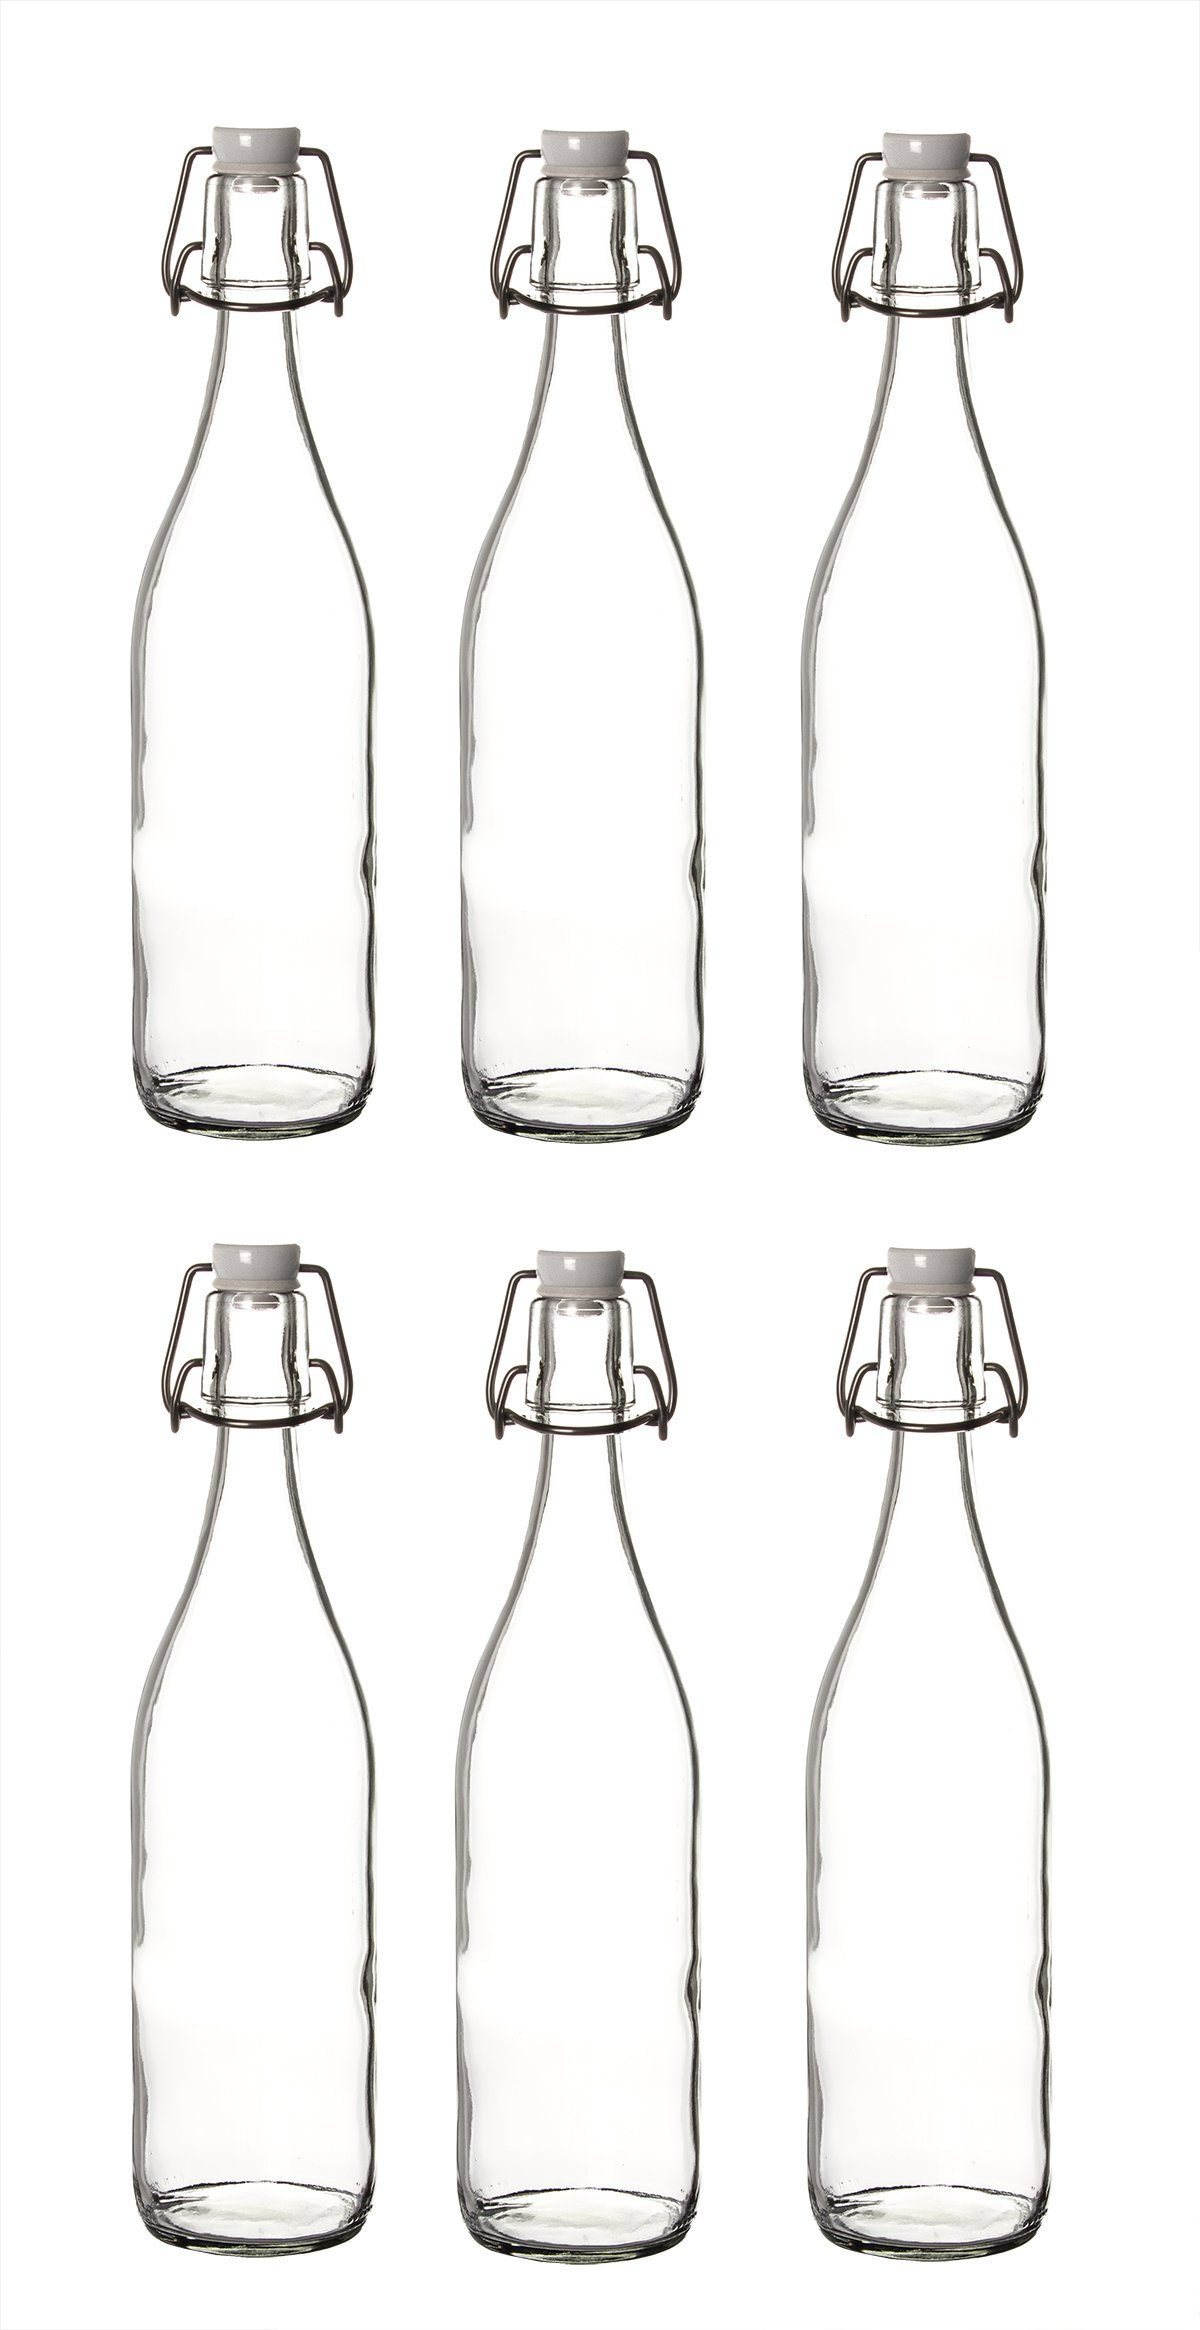 BigDean Trinkflasche 6x Glasflaschen mit Bügelverschluss 1000ml − 1 Liter  Bügelflasche zum Befüllen − Made in Germany − Bügelglasflaschen  Likörflaschen